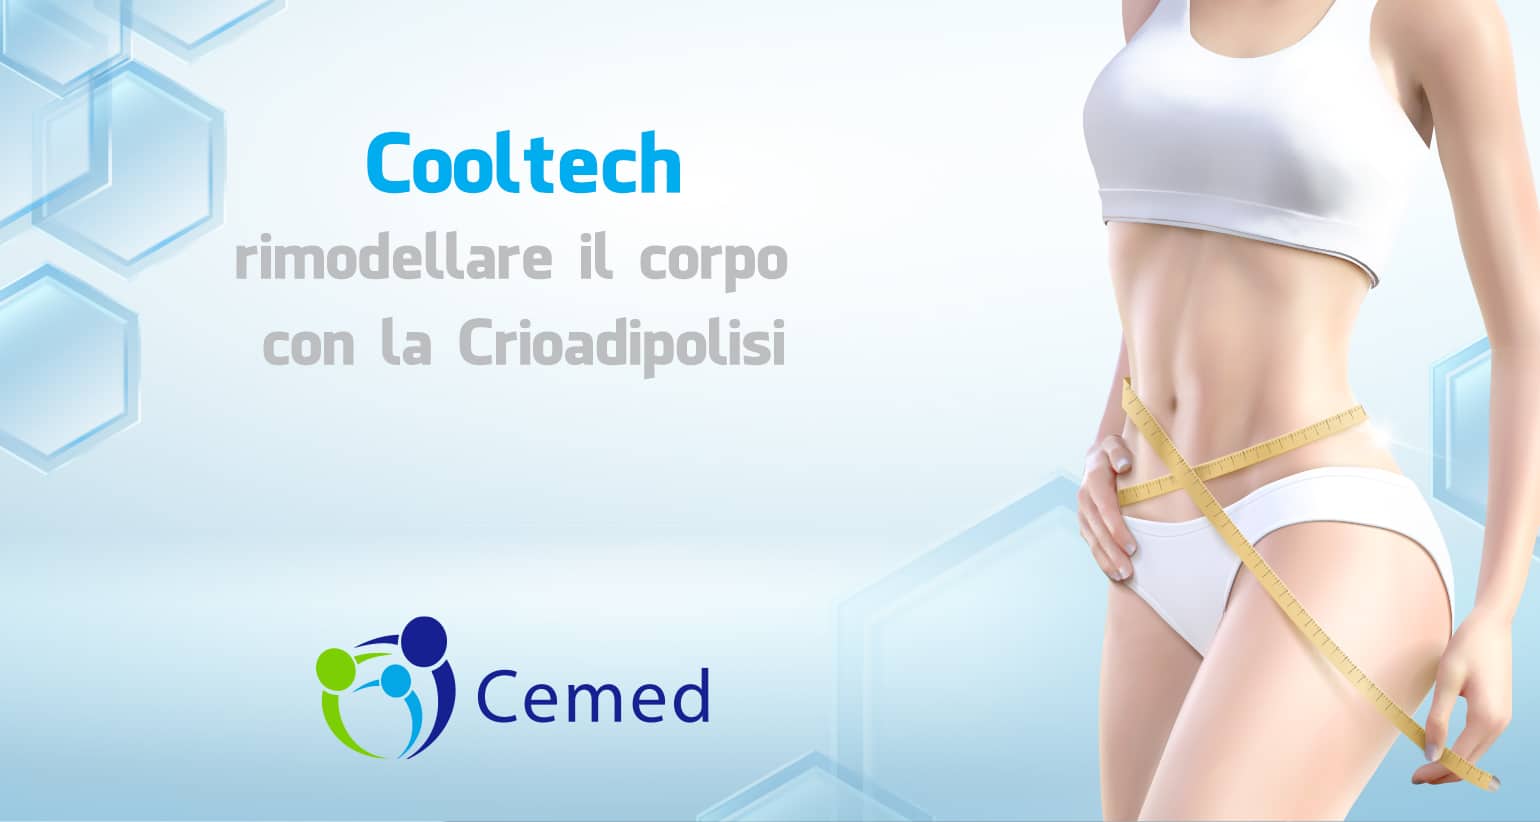 Cooltech: rimodellare il corpo con la Crioadipolisi